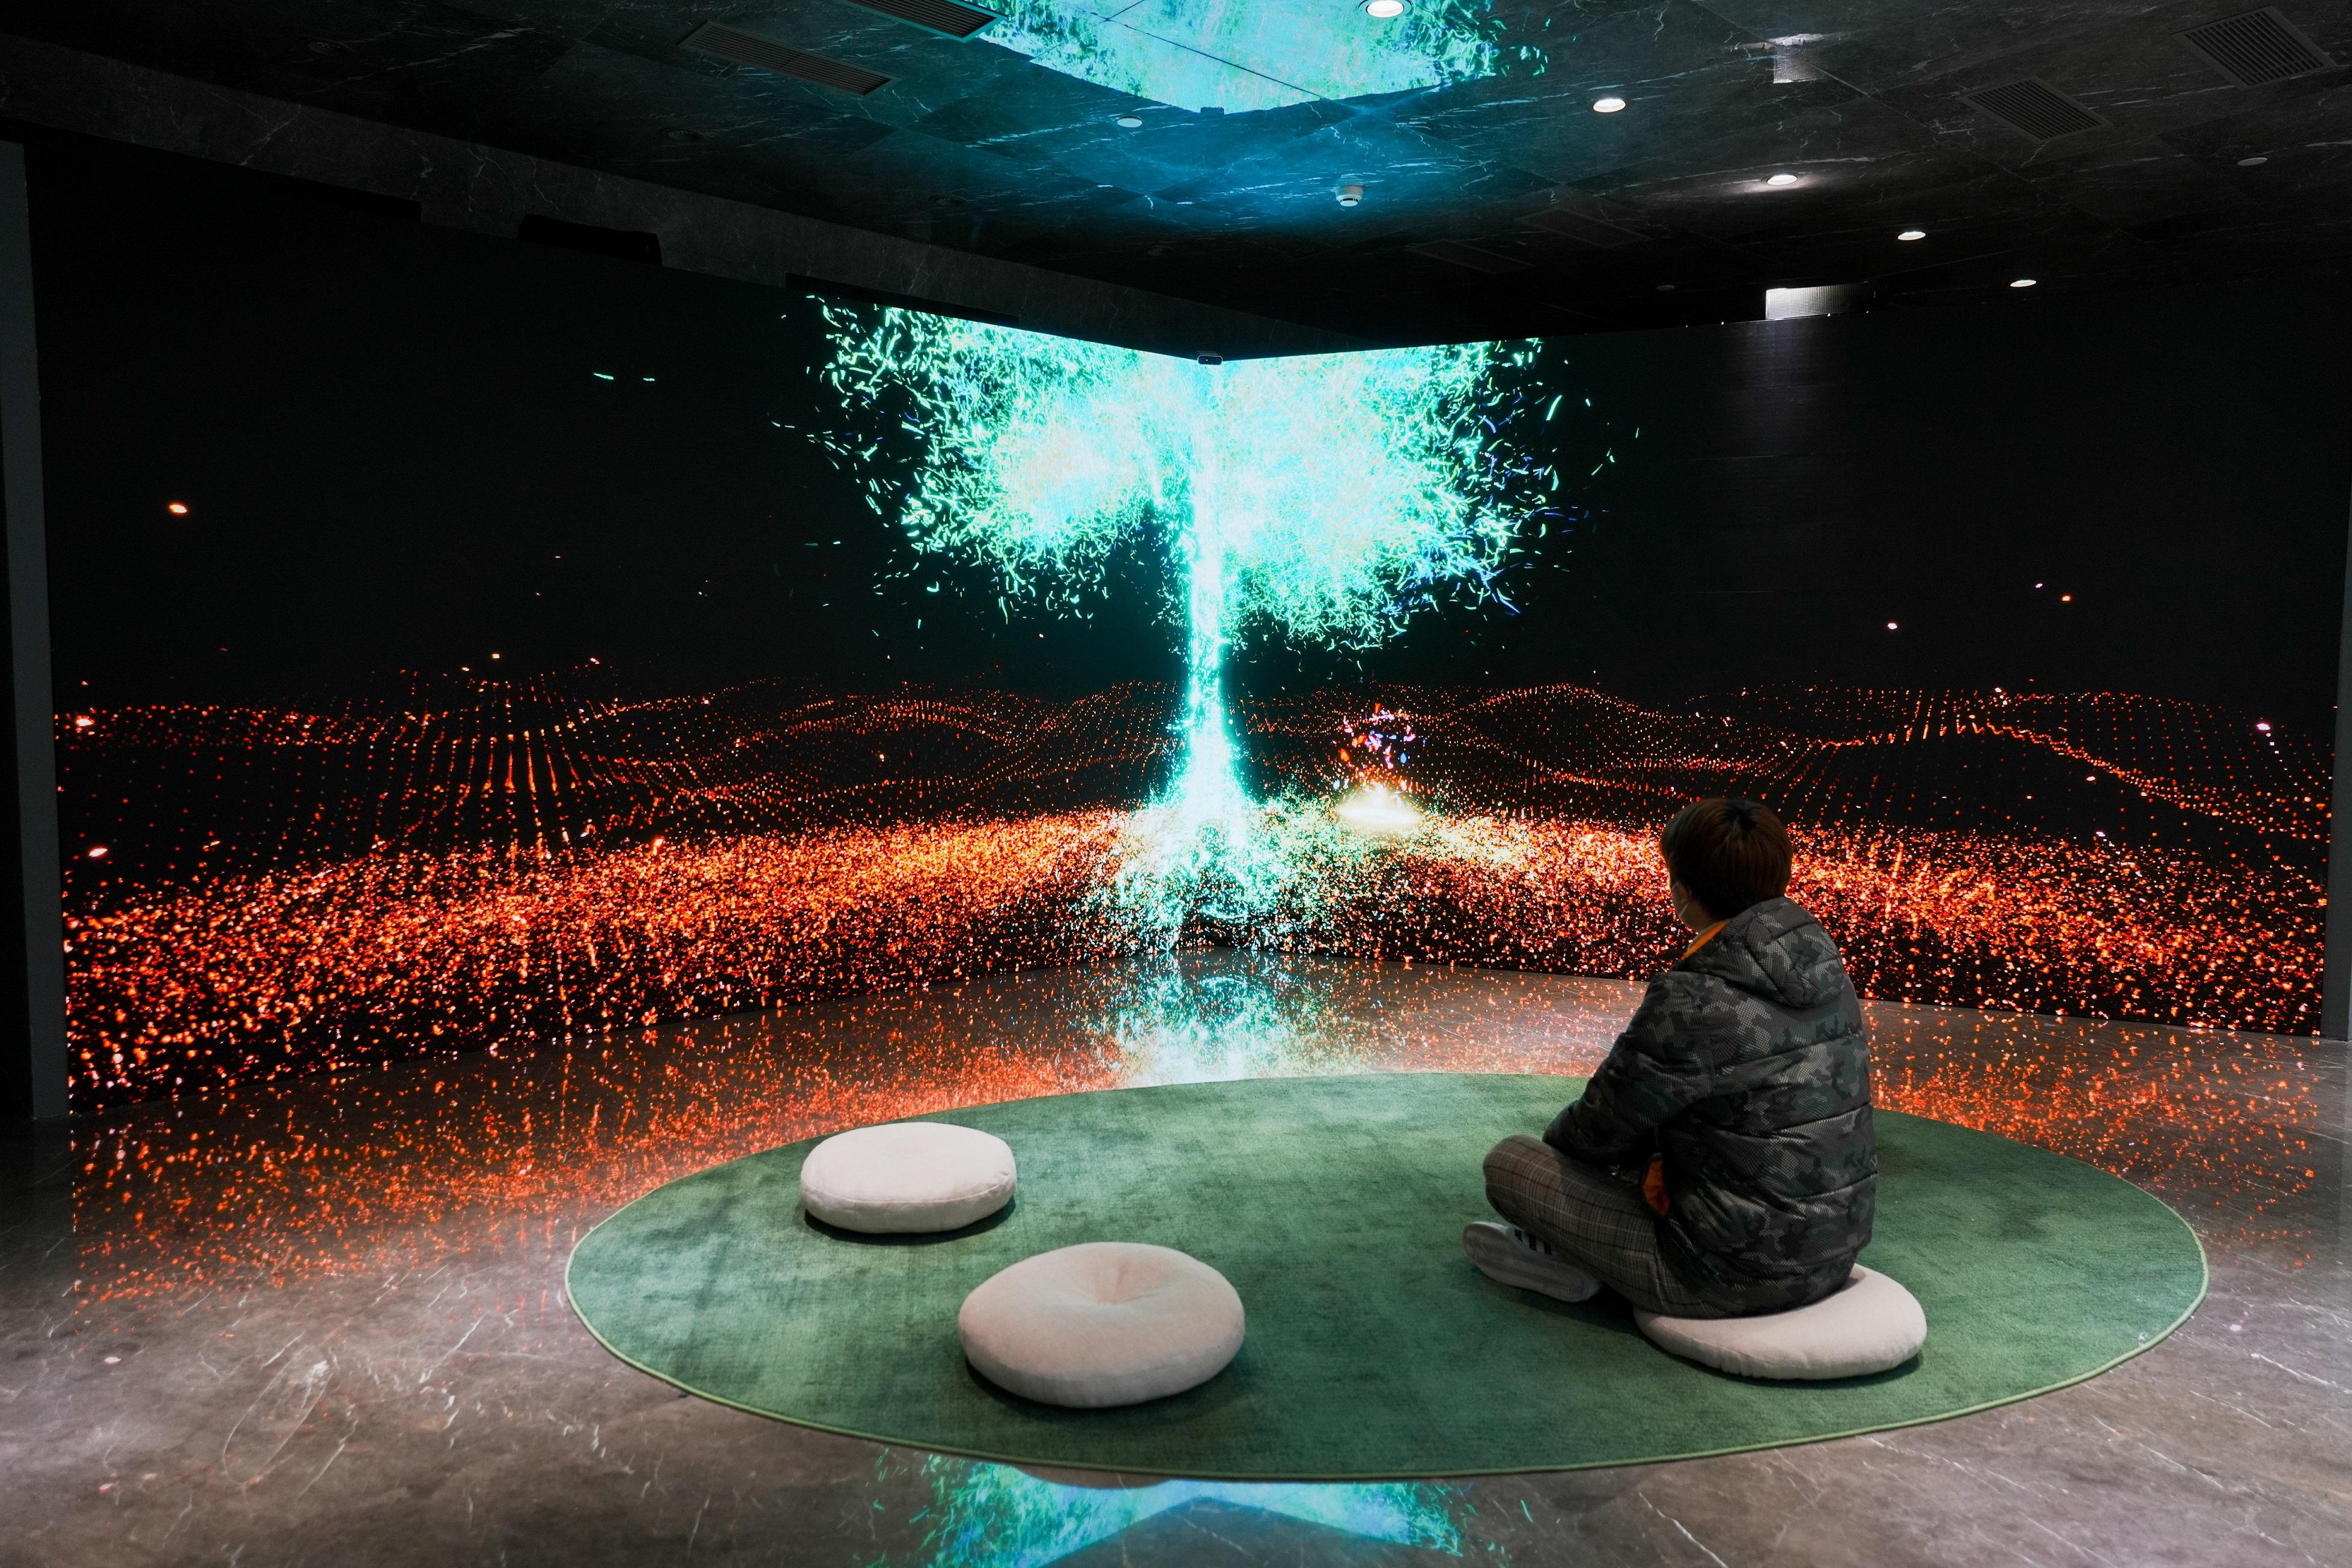 「2022港澳視覺藝術雙年展」現正於北京勸業場文化藝術中心舉行。圖示香港藝術家組合葉韋瀚和陶芷琛創作的沉浸式互動體驗裝置《樗樹之用》，作品模擬未來中一個虛擬叢林。作品透過與觀眾的互動，呈現不同物種在大自然和平共處的景象，觀眾的一舉一動會影響各種植物的生命週期。